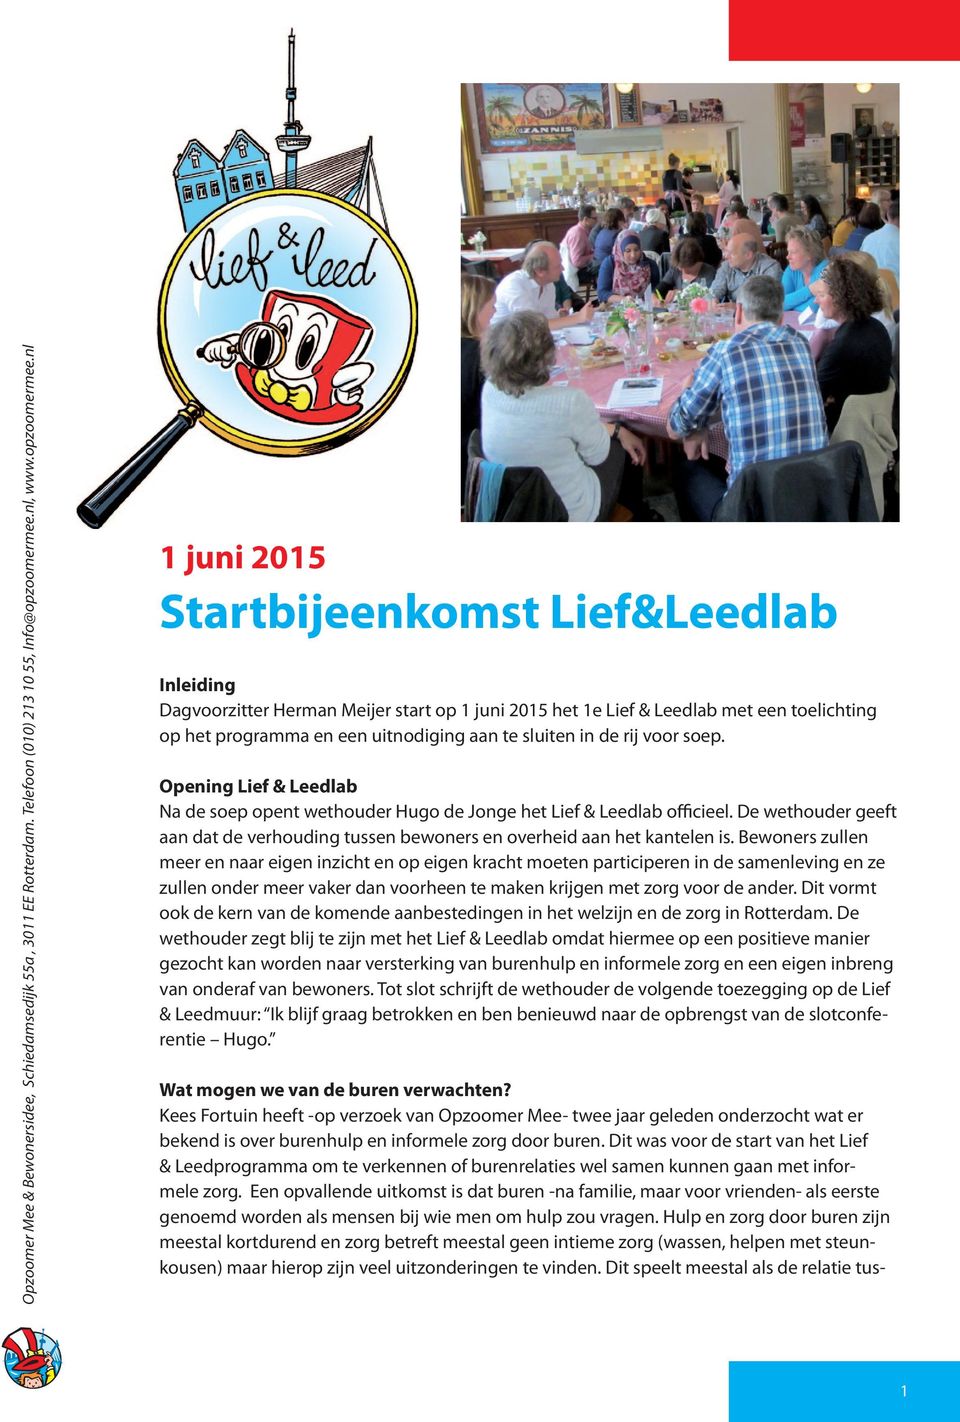 nl 1 juni 2015 Startbijeenkomst Lief&Leedlab Inleiding Dagvoorzitter Herman Meijer start op 1 juni 2015 het 1e Lief & Leedlab met een toelichting op het programma en een uitnodiging aan te sluiten in